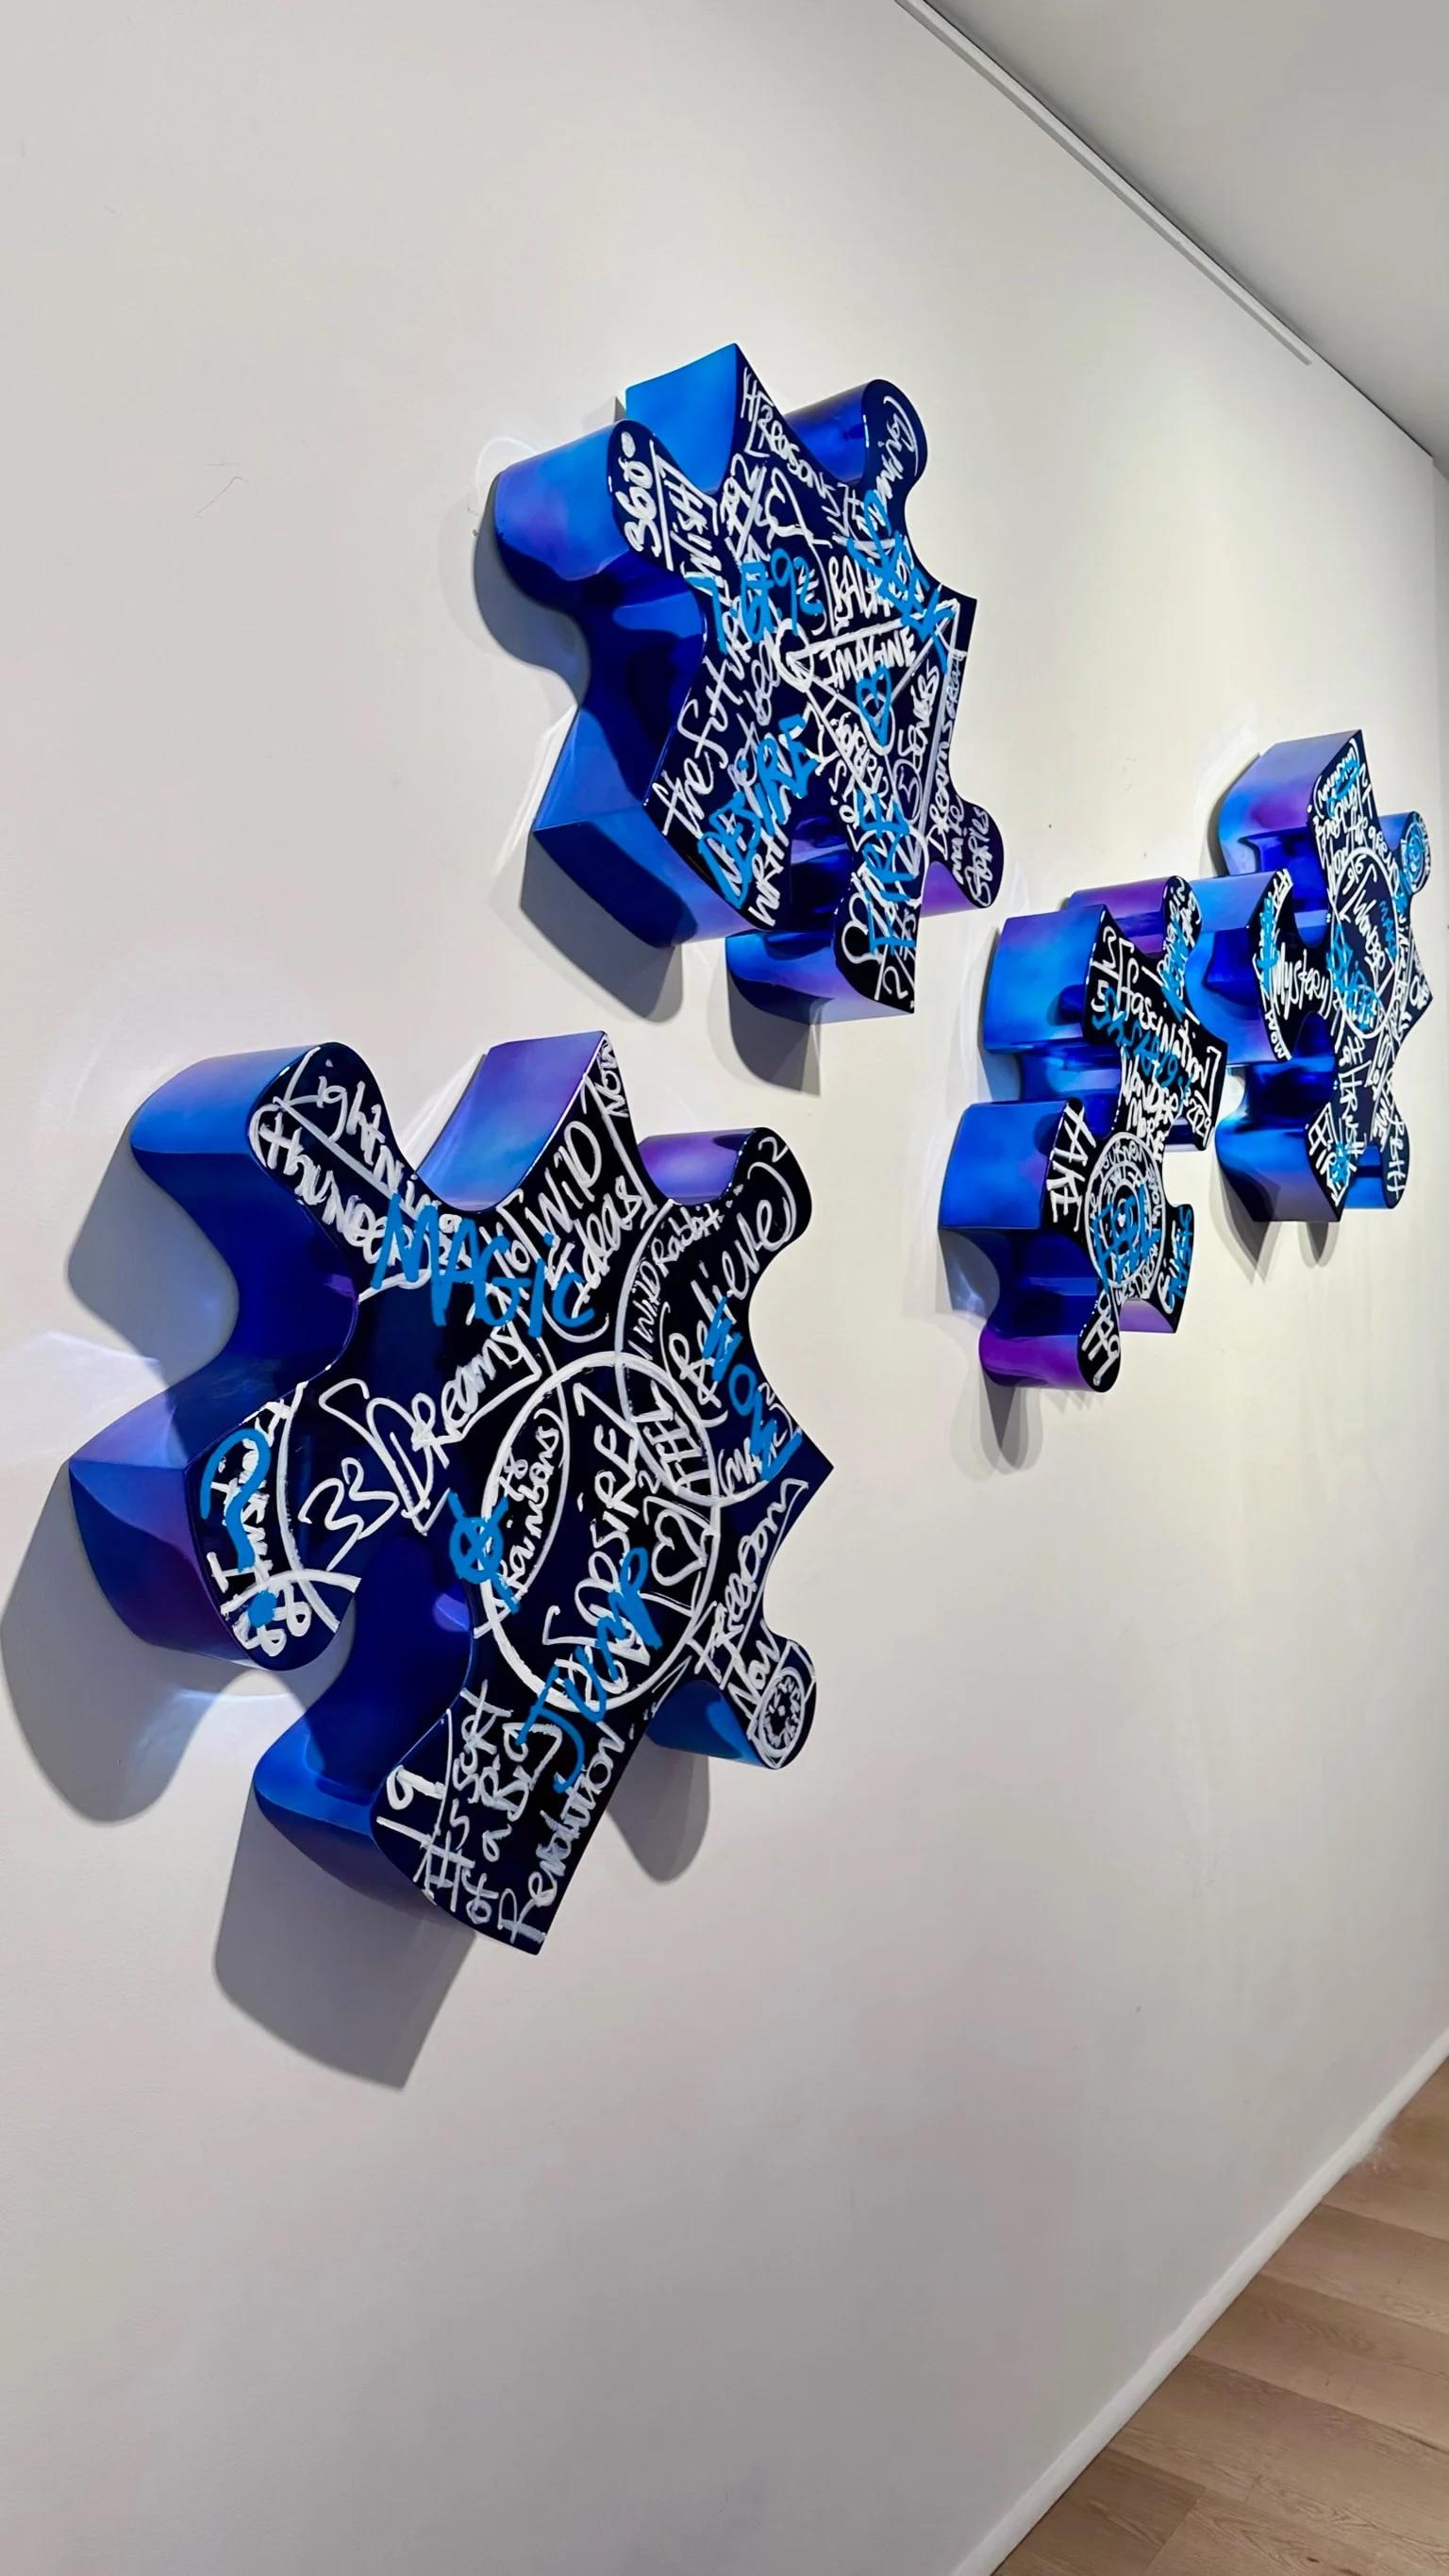 Life is a Jigsaw (Dark Blue) - Contemporary Sculpture by Brendan Murphy